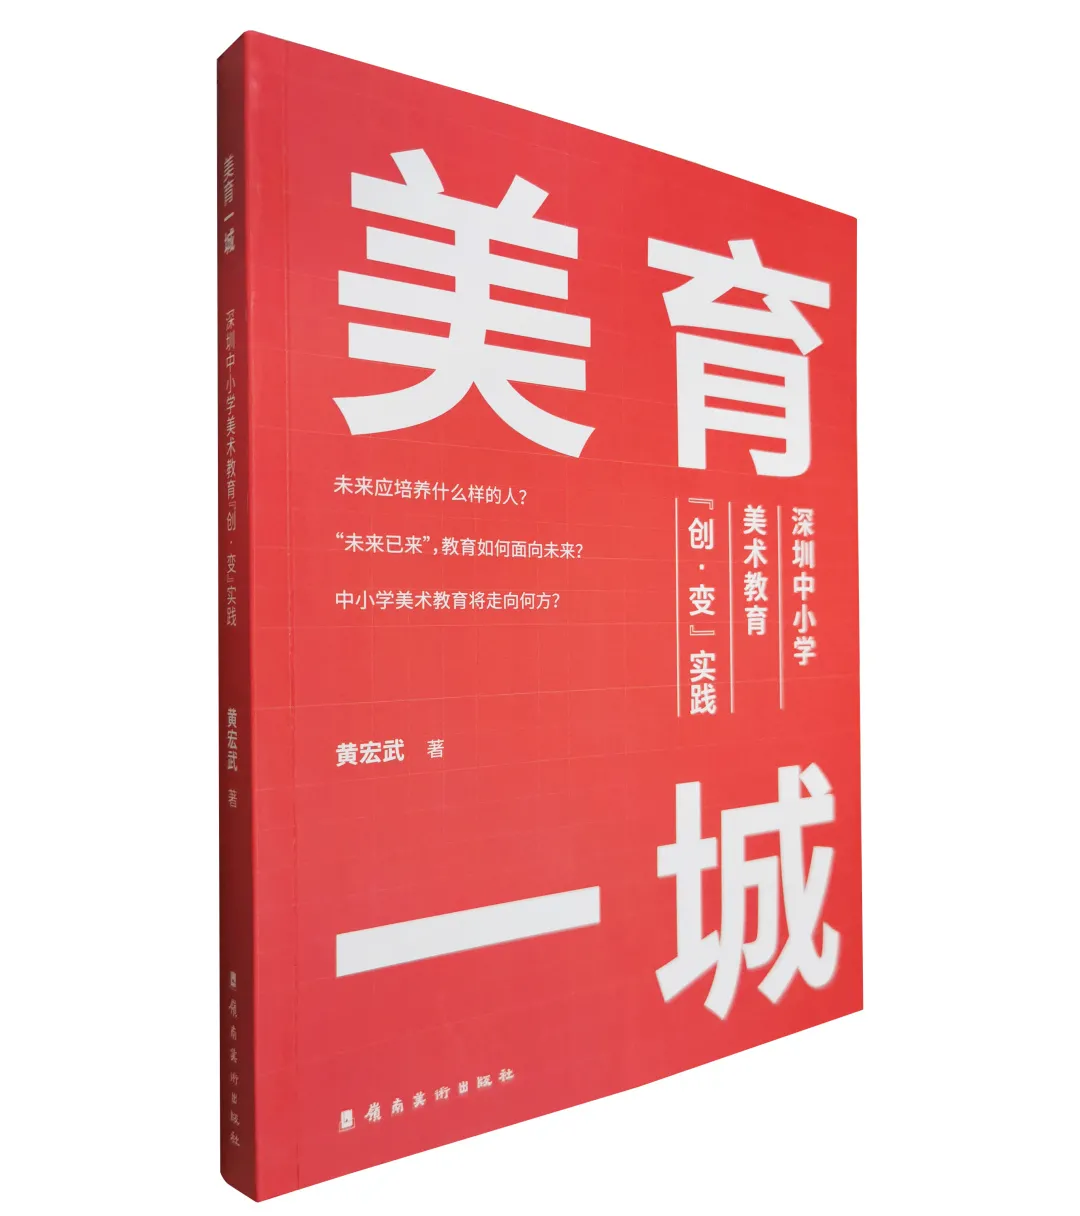 「每周荐书」《美育一城——深圳中小学美术教育“创·变”实践》